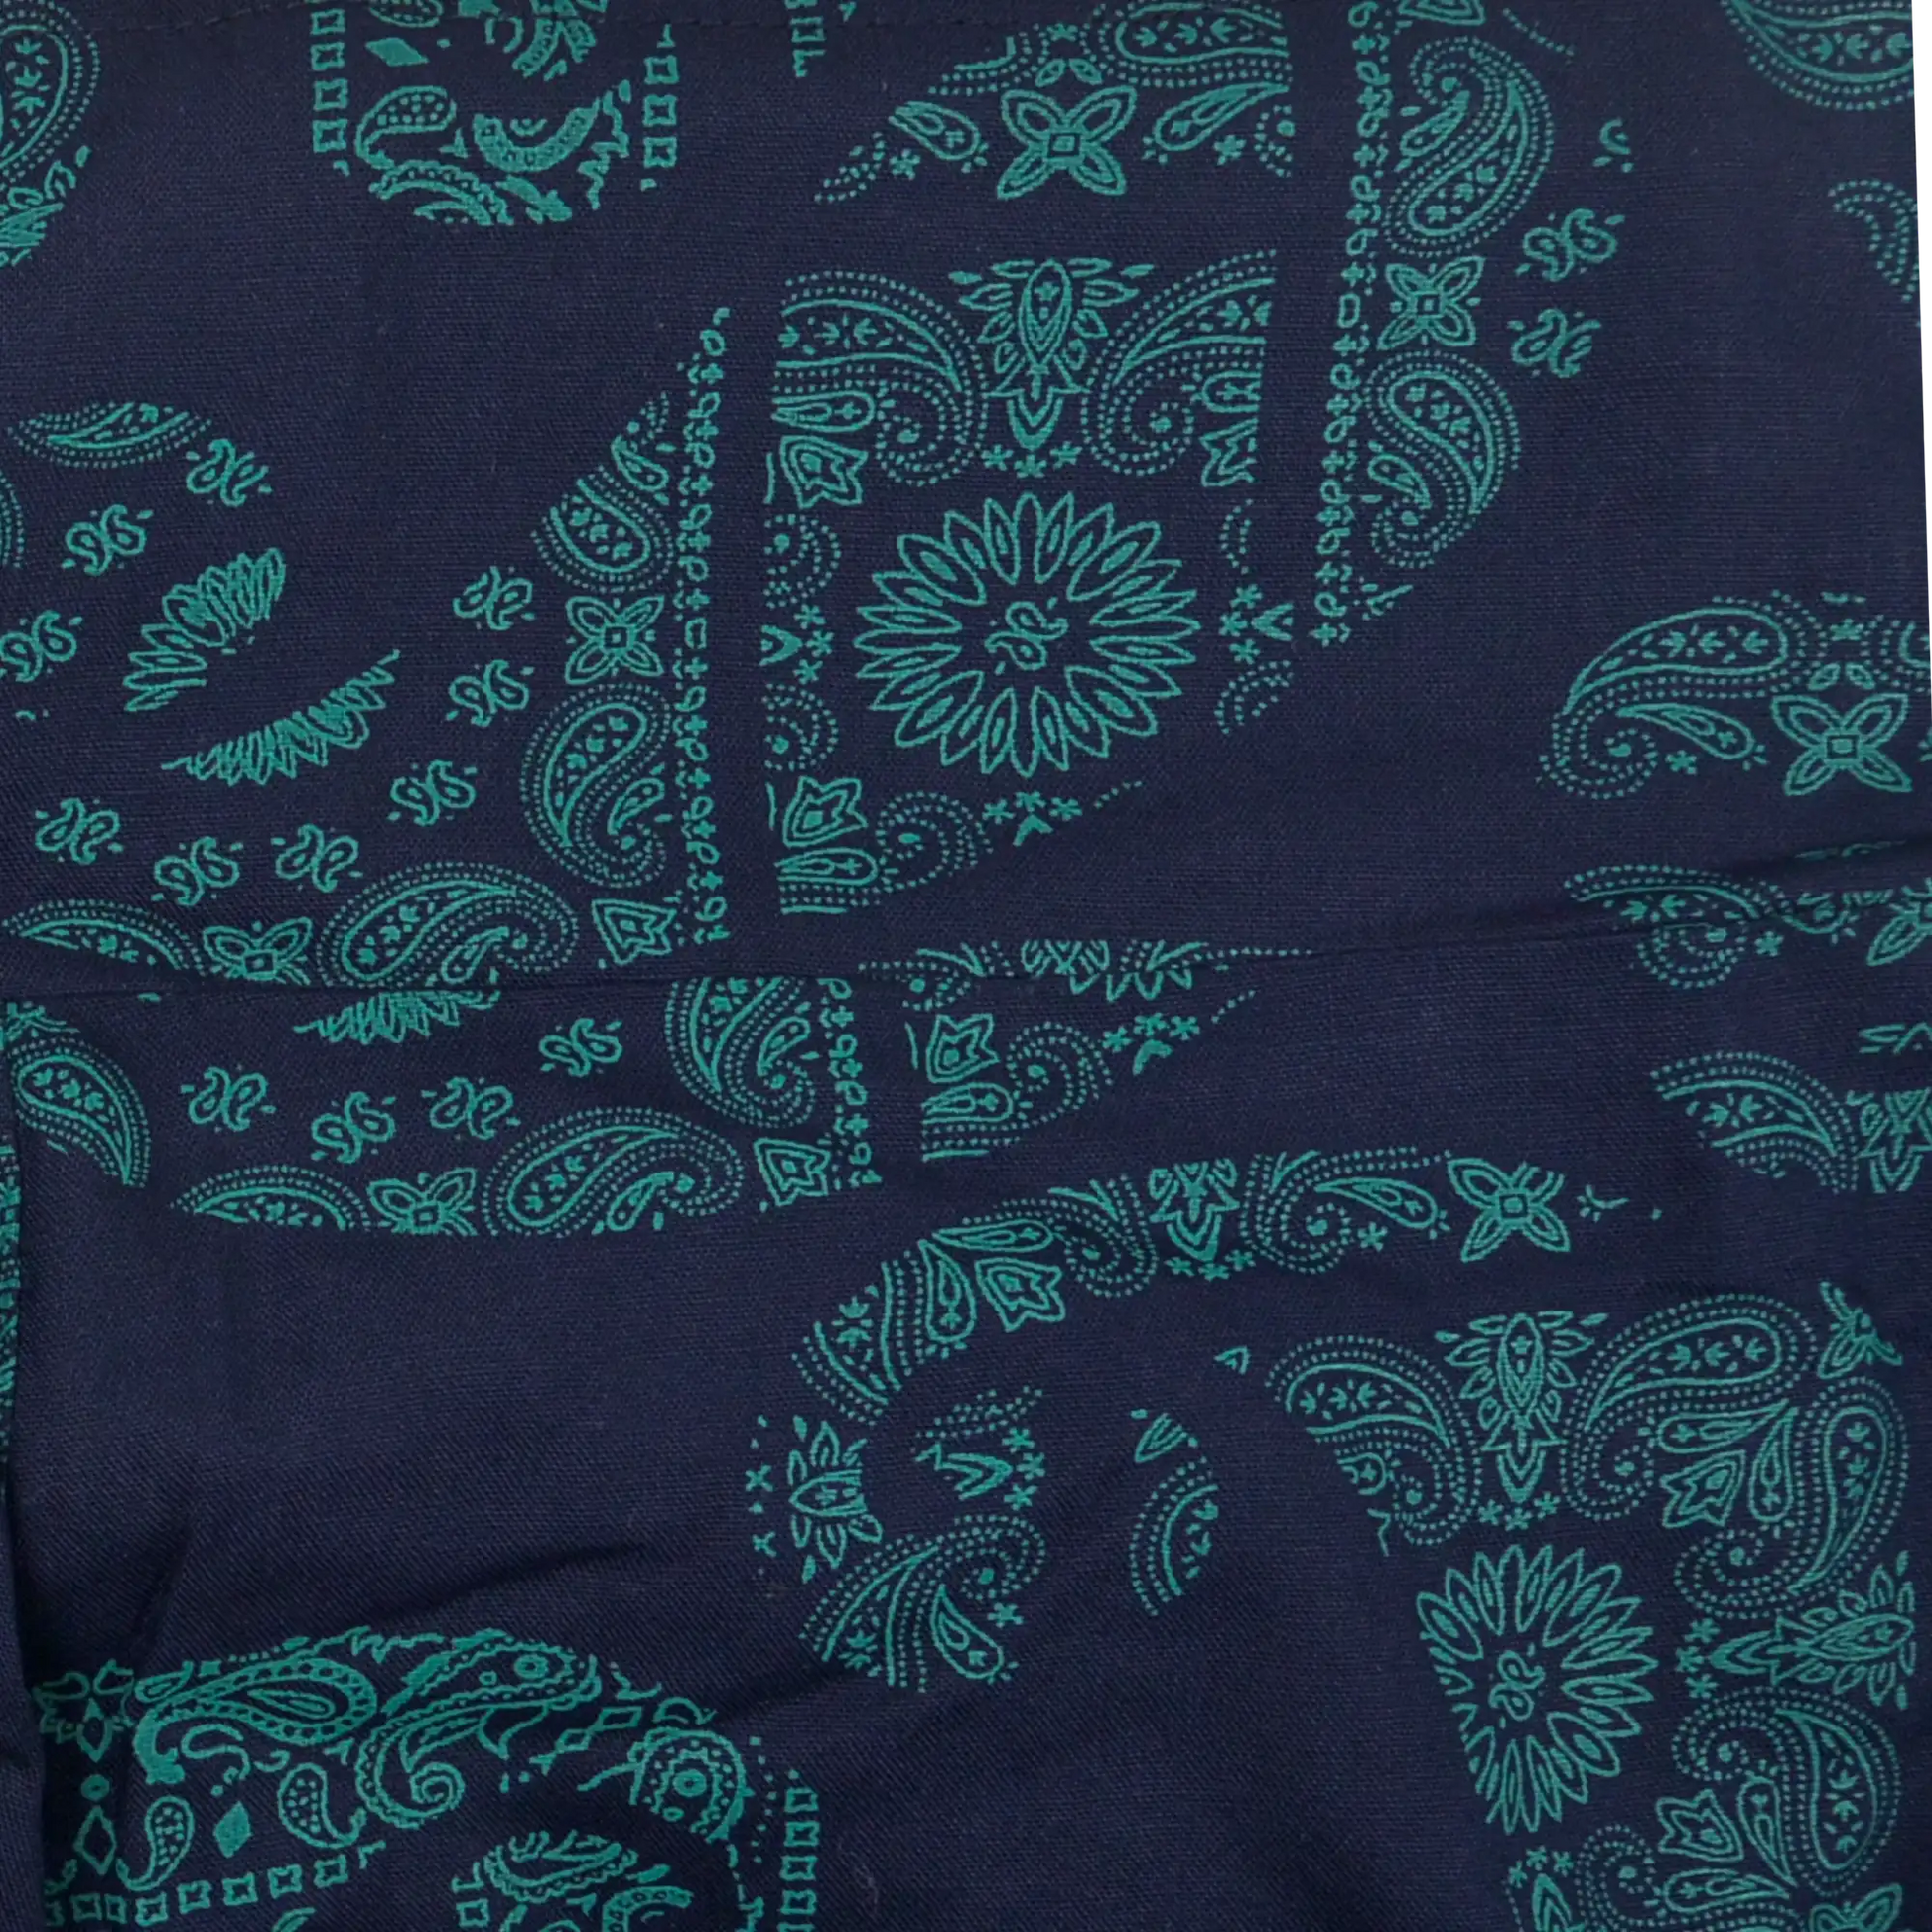 Ausschnitt vom Muster des Sommerrock, Maxirock aus Viskose, dunkelblau mit grünem Paisley. Elastischer Schlupfbund.